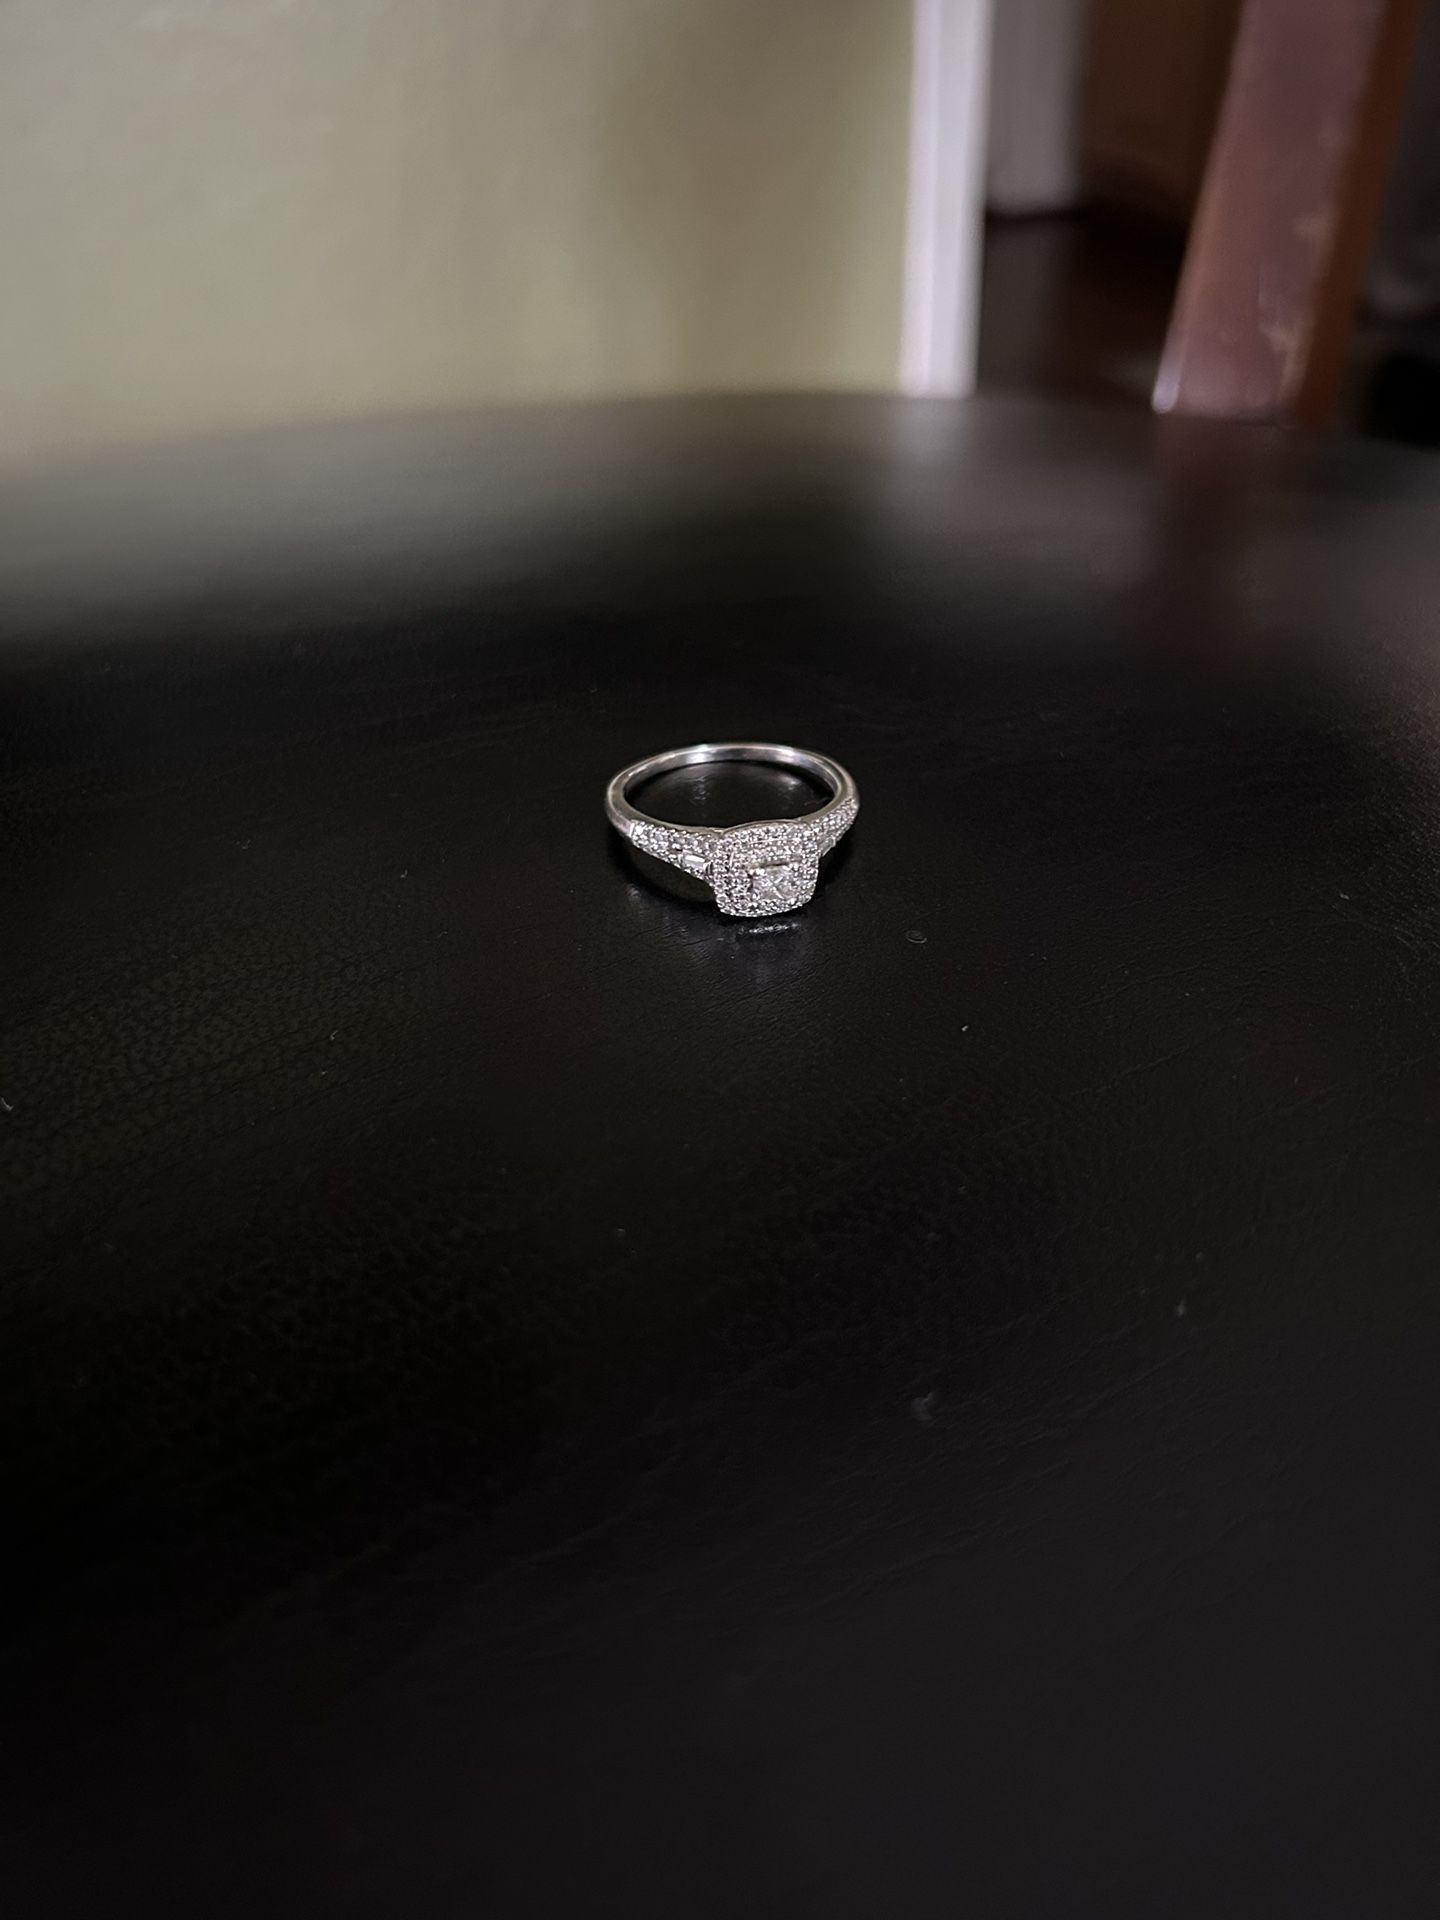 Engagement ring 5-8, 10 karat white gold